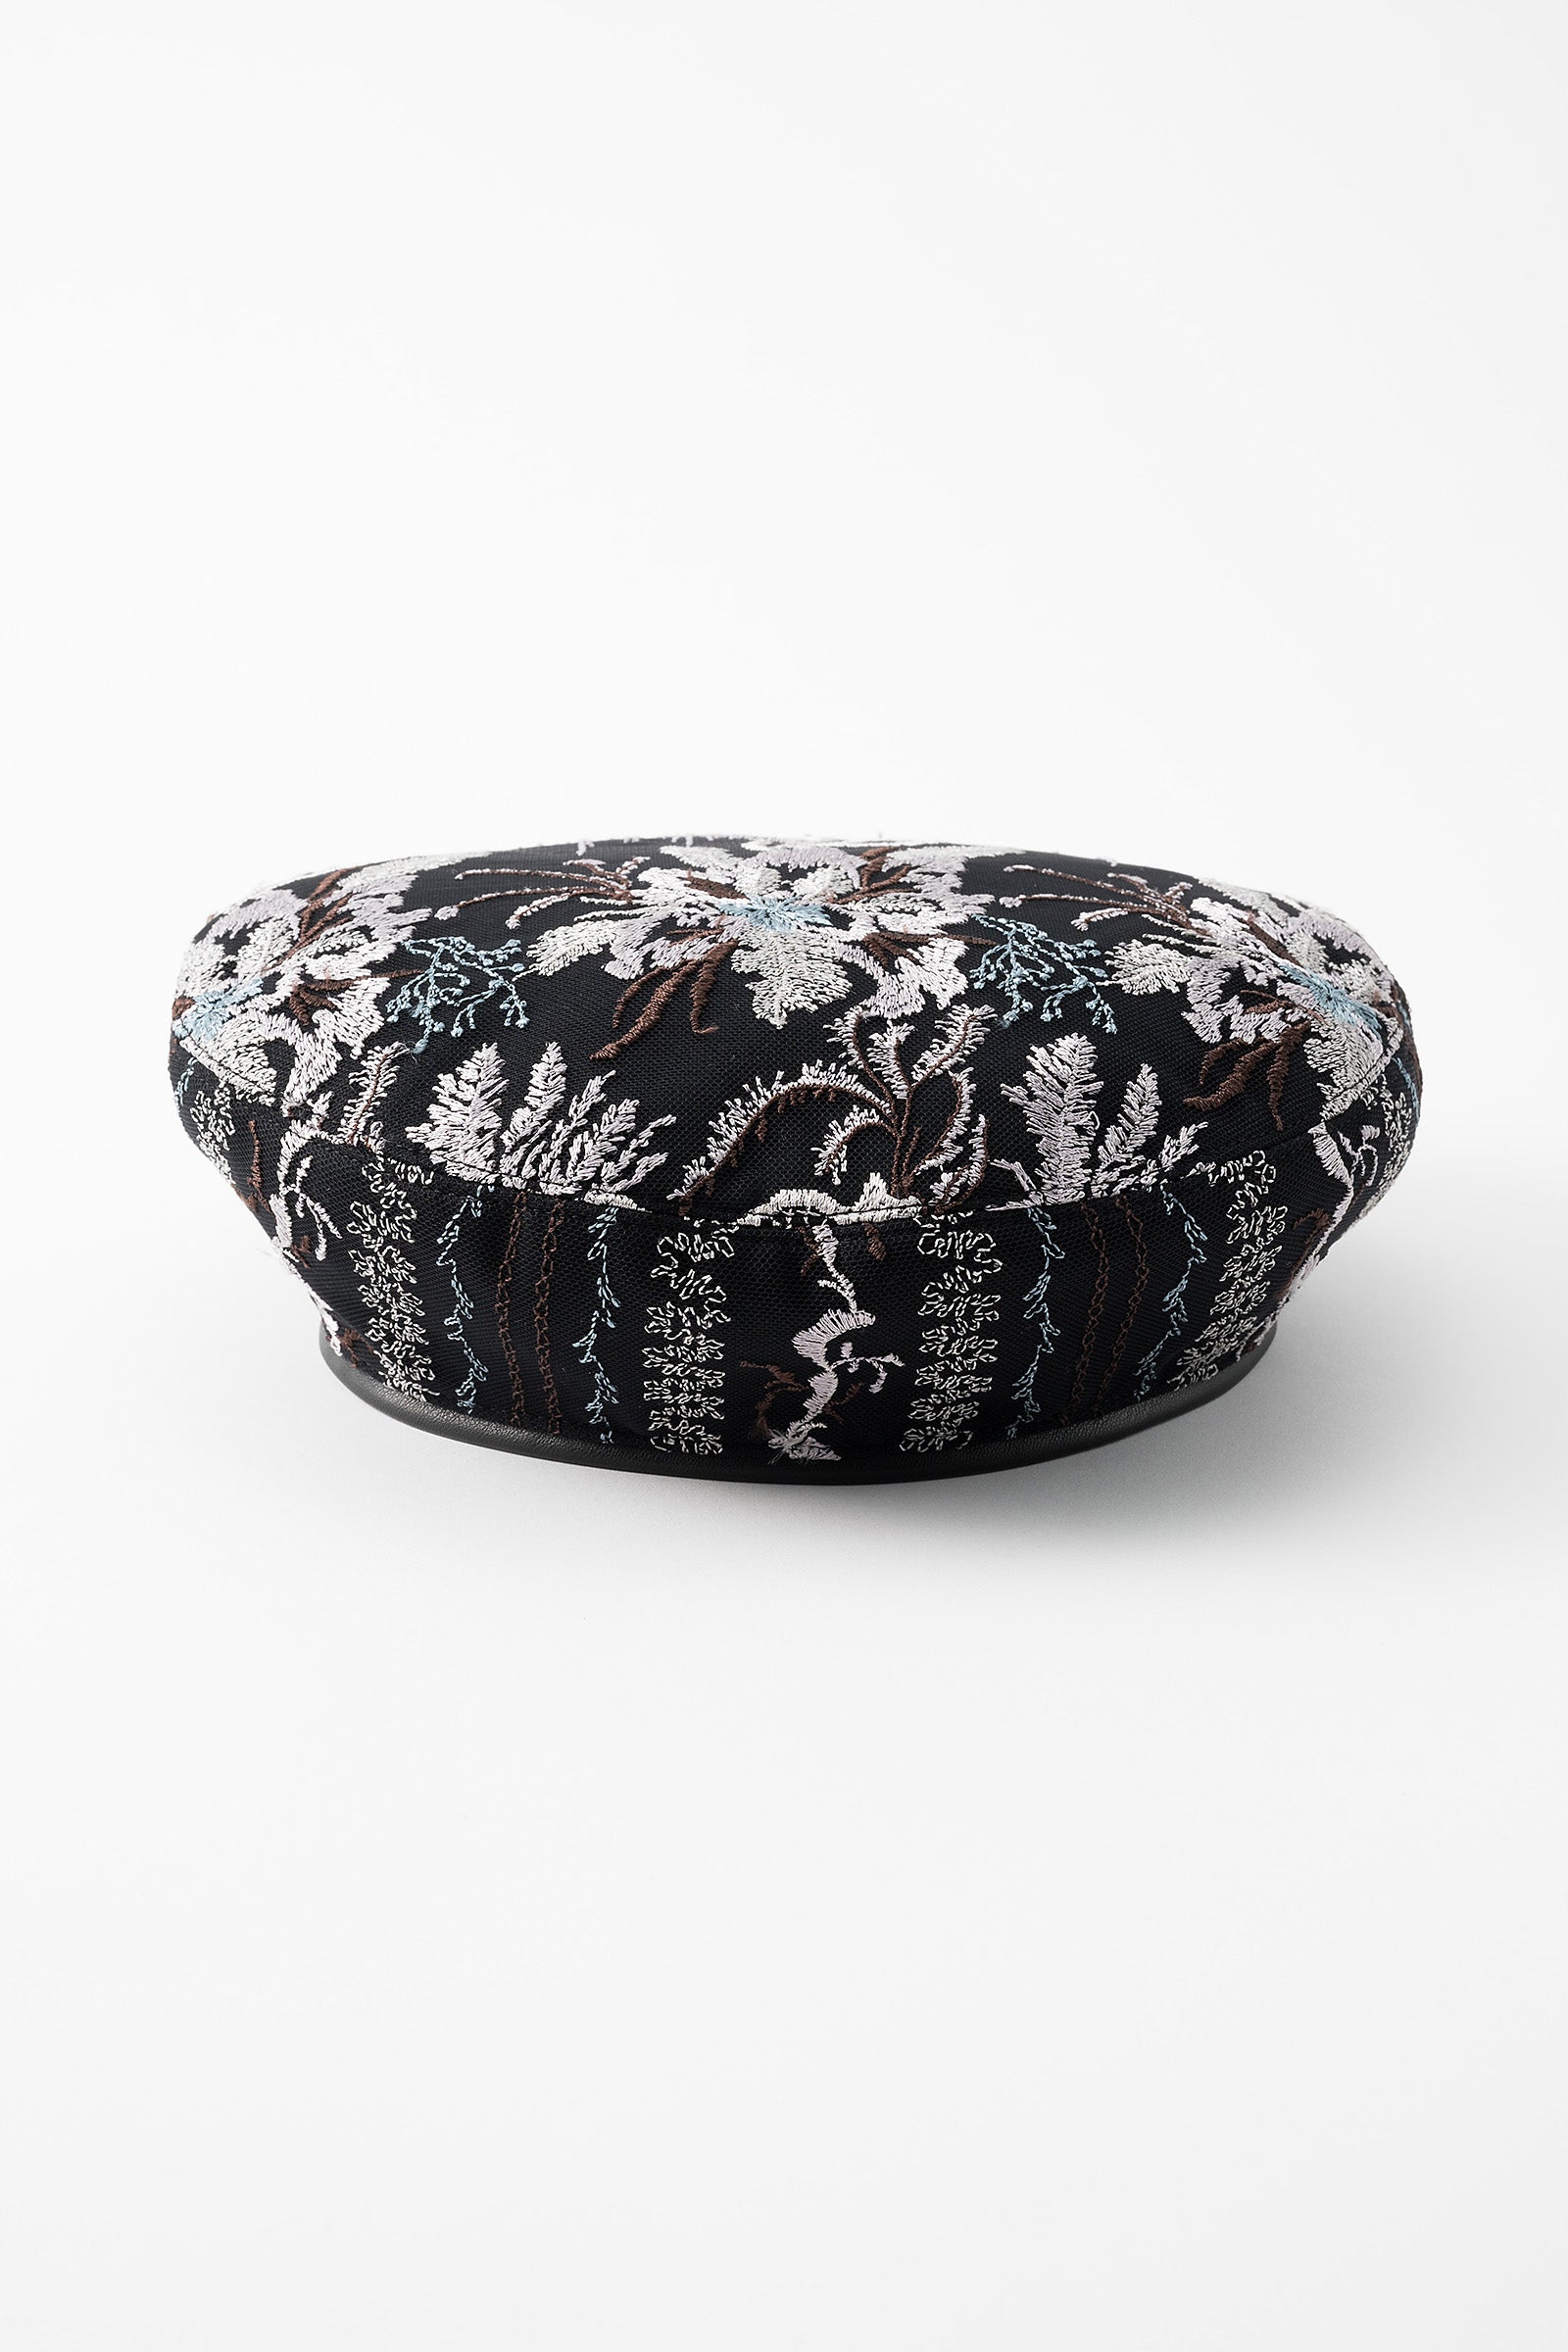 SUIS1458限定特価❣️ Snow flower lace beret